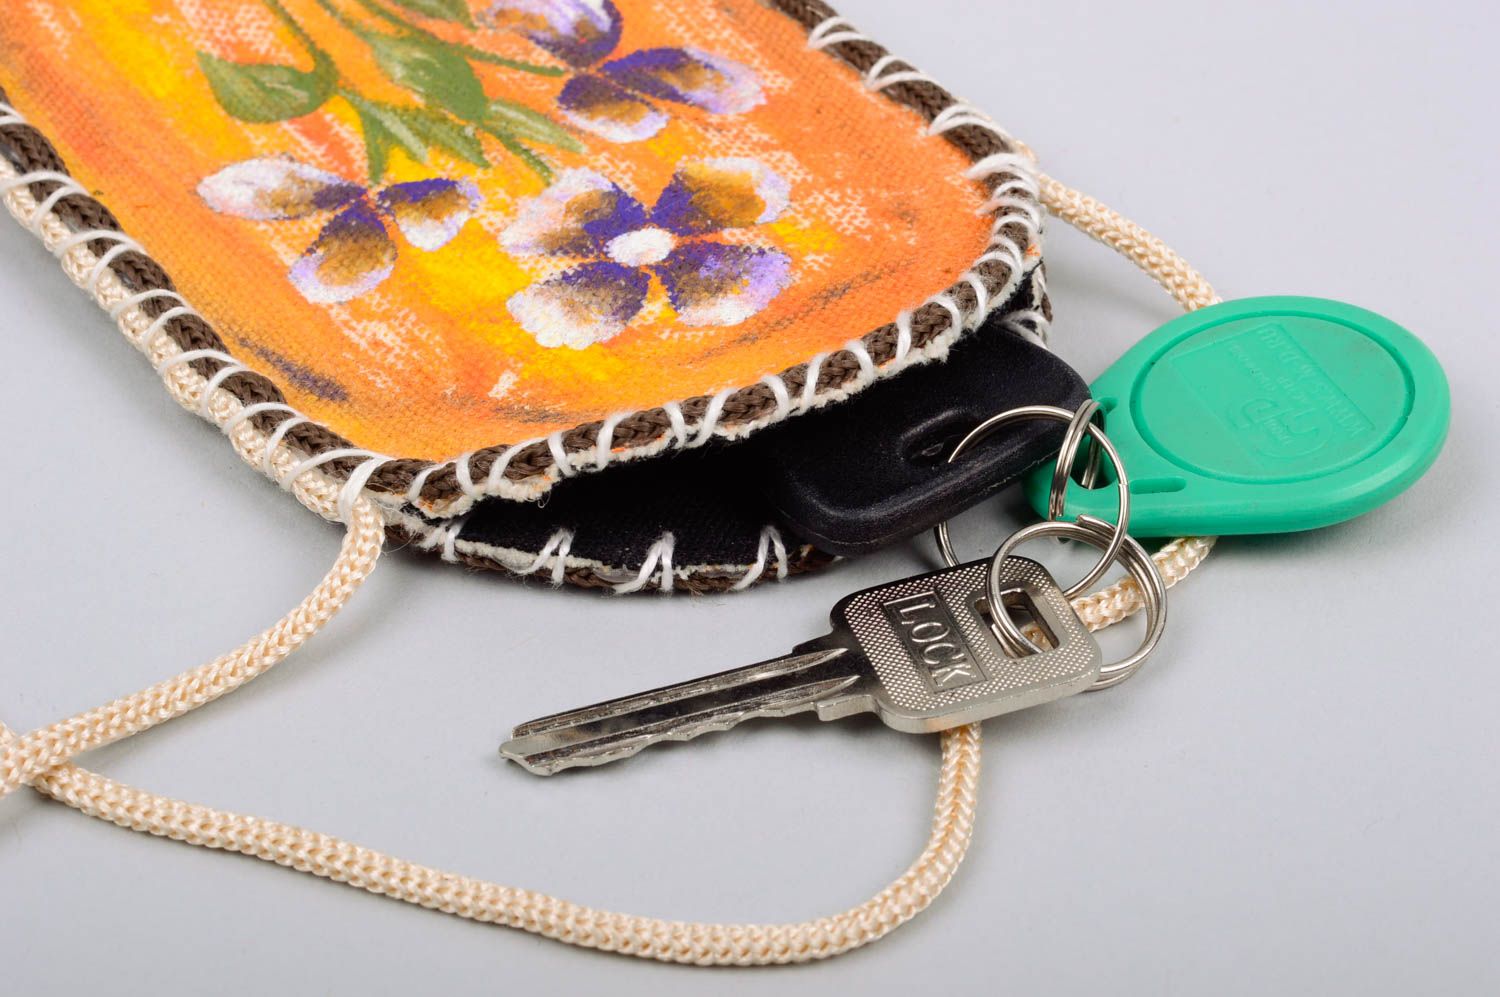 Housse pour téléphone portable en bâche peinte motif floral faite main sur lacet photo 5